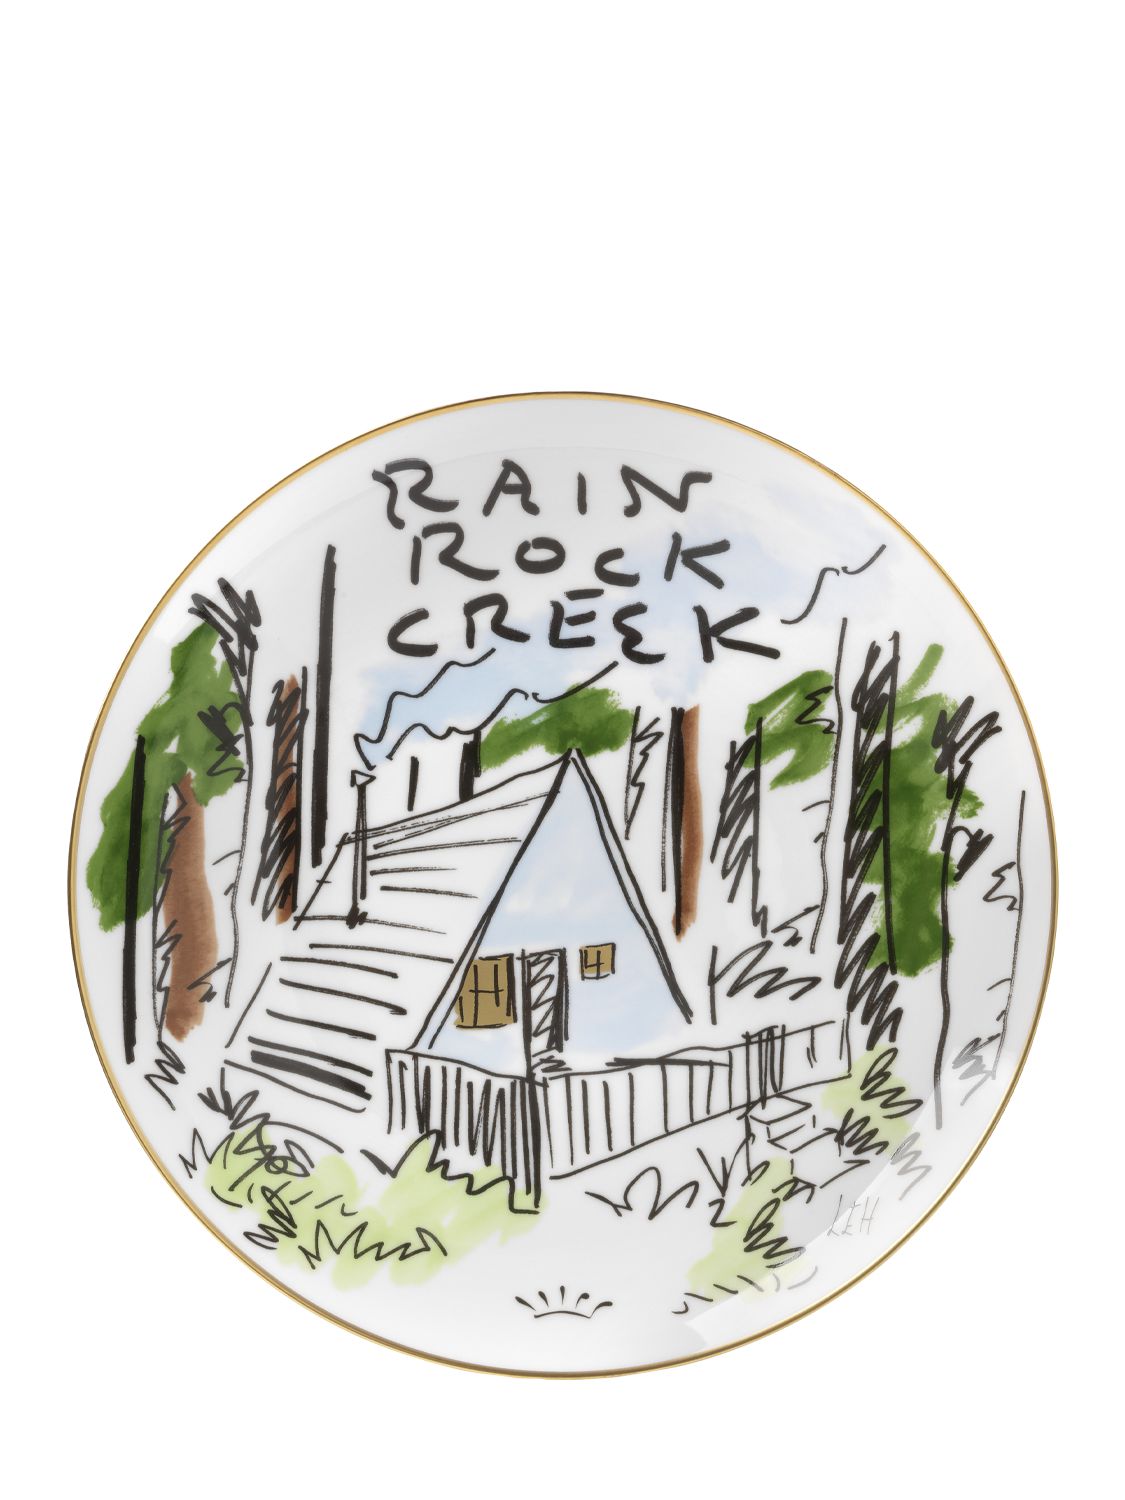 Piatto Rain Rock Creek - GINORI 1735 - Modalova